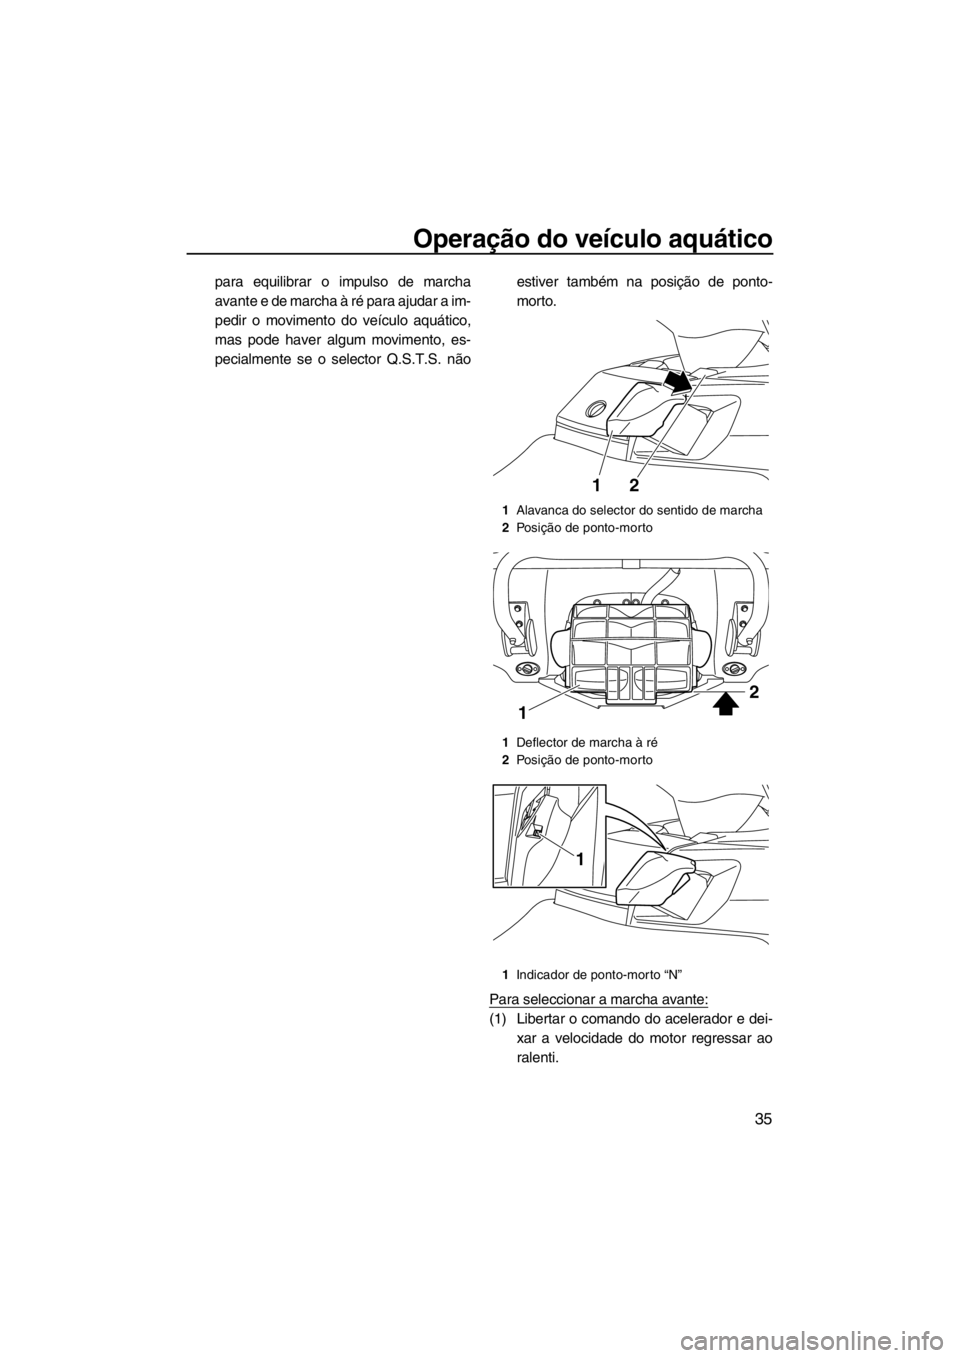 YAMAHA FX SHO 2012  Manual de utilização (in Portuguese) Operação do veículo aquático
35
para equilibrar o impulso de marcha
avante e de marcha à ré para ajudar a im-
pedir o movimento do veículo aquático,
mas pode haver algum movimento, es-
pecialm